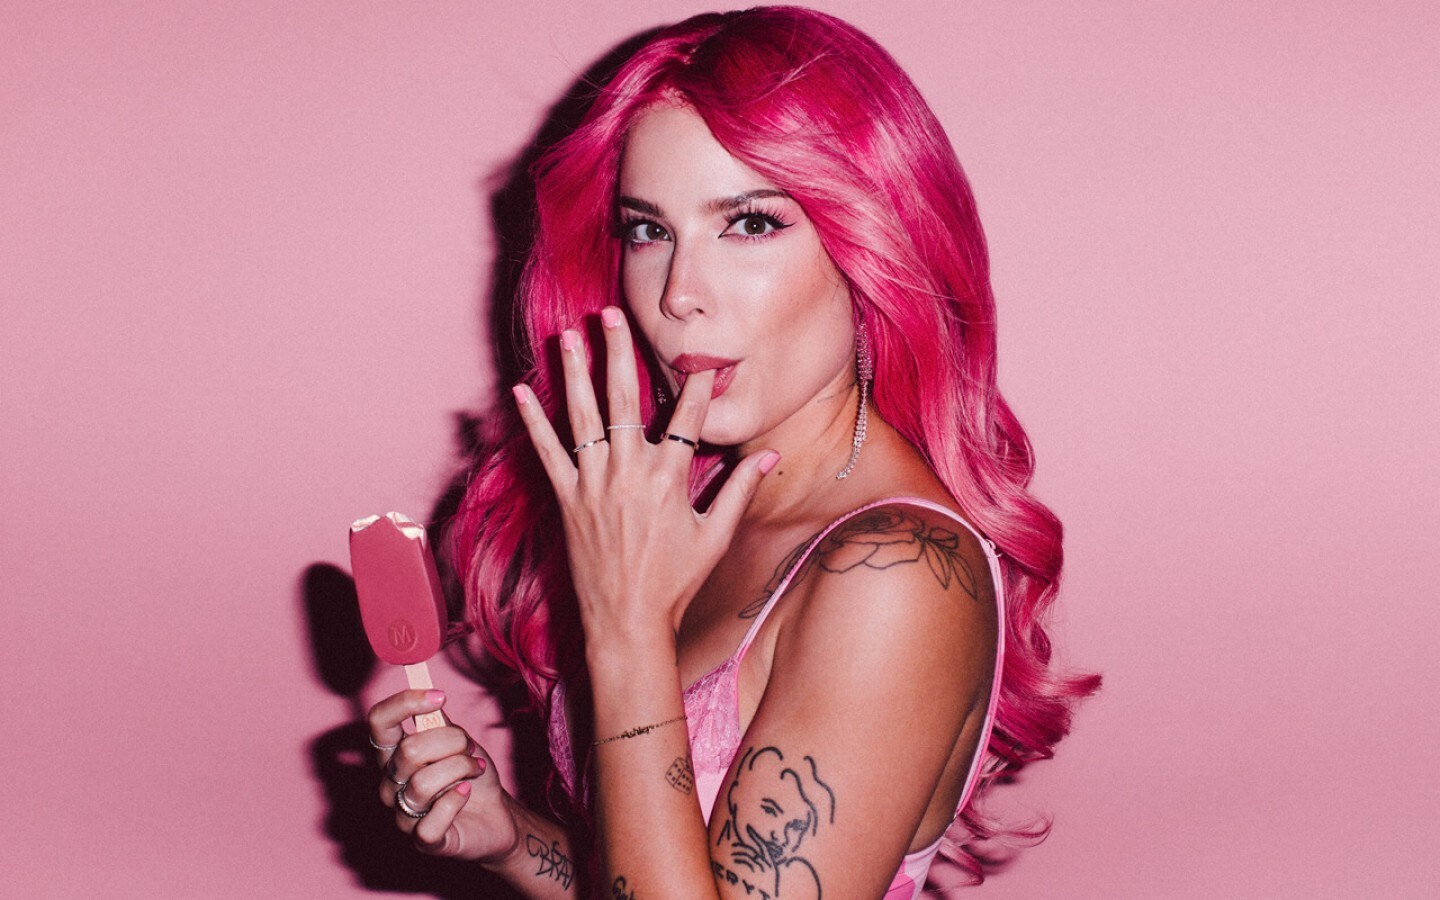 Fotos n°1 : Halsey va en vivo en una peluca rosa!